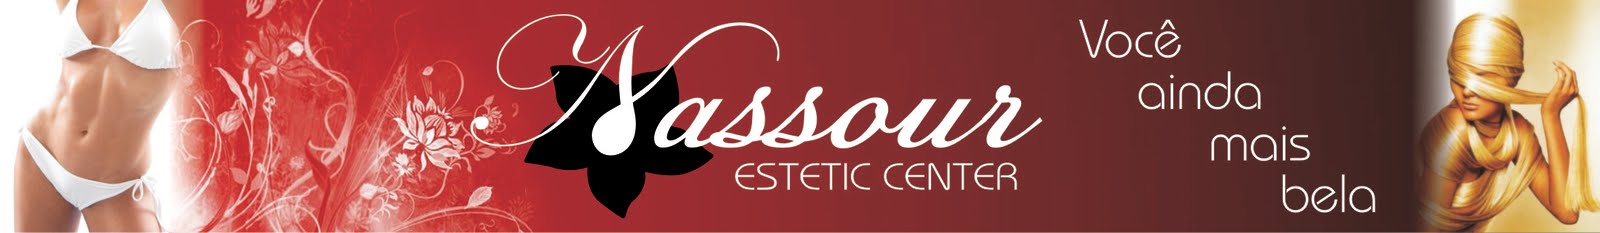 Nassour Estetic Center